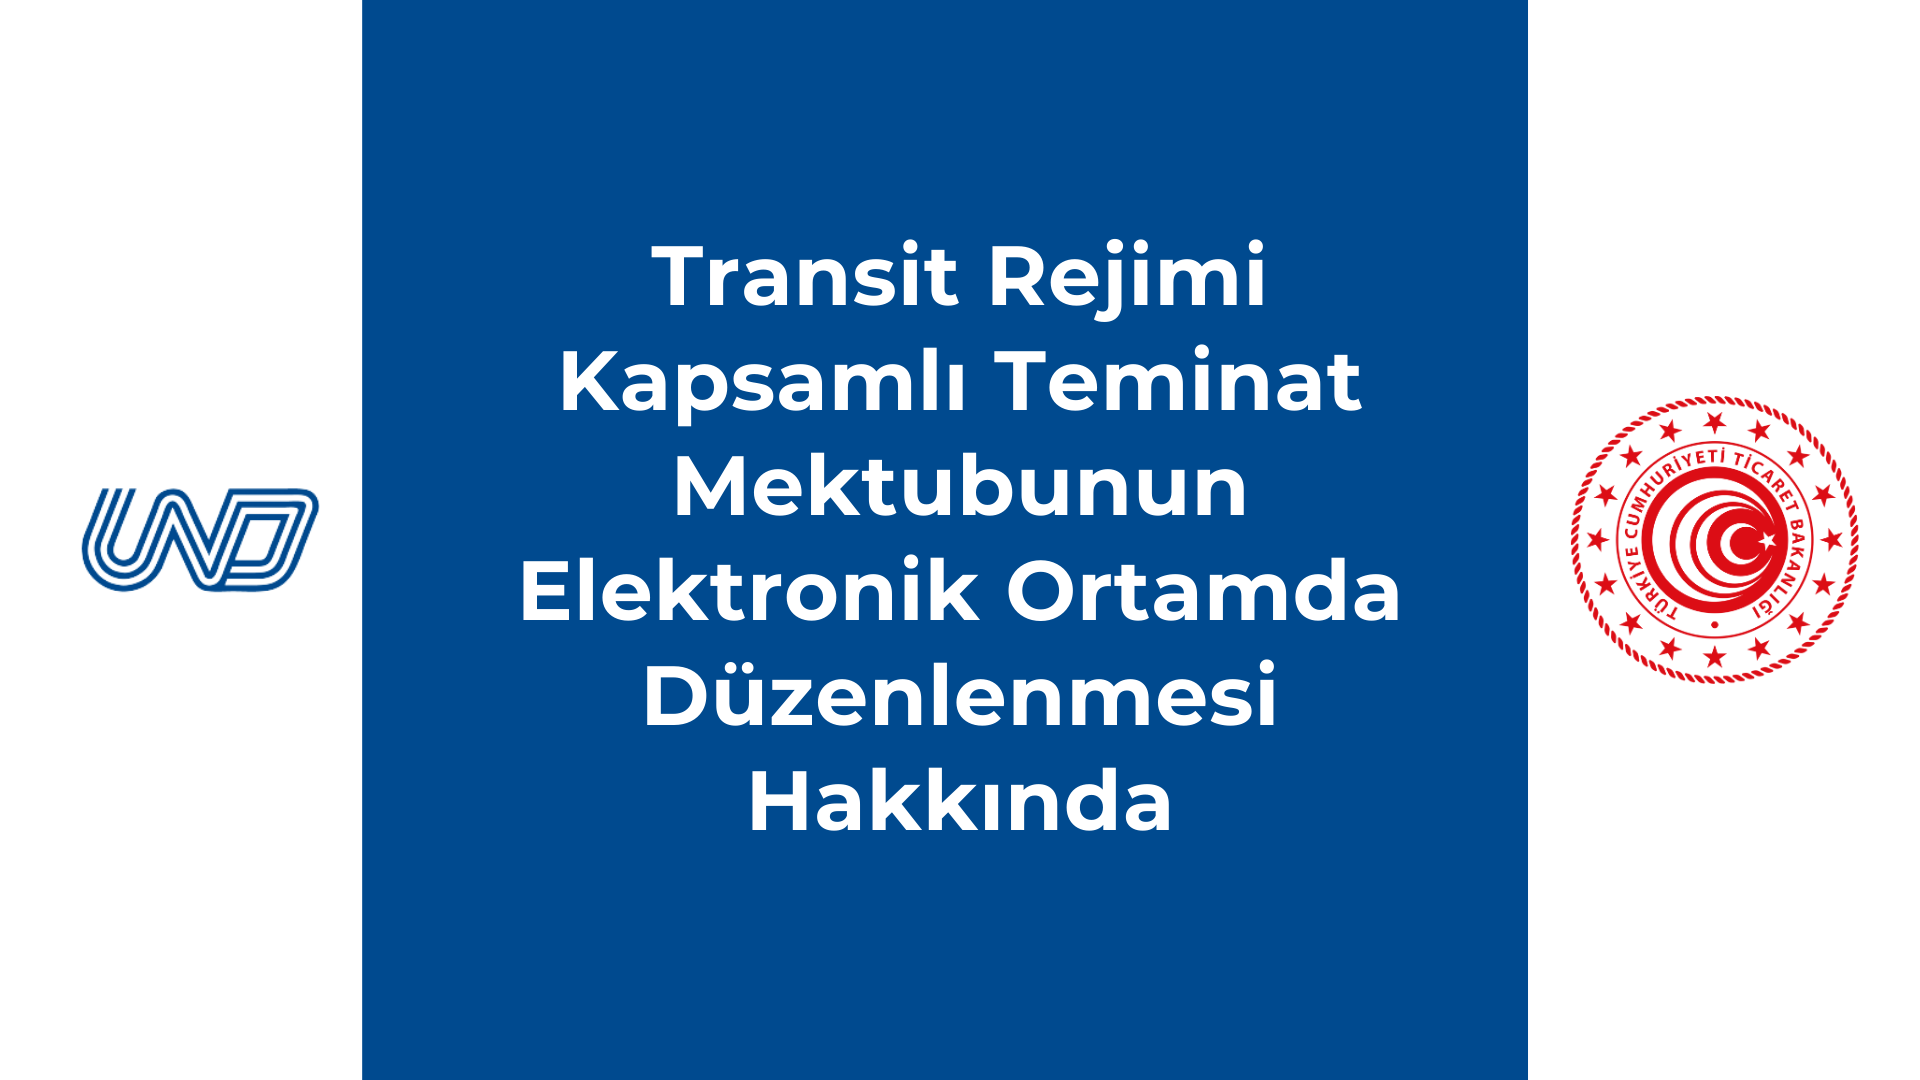 Transit Rejimi Kapsamlı Teminat Mektubunun Elektronik Ortamda Düzenlenmesi Hakkında